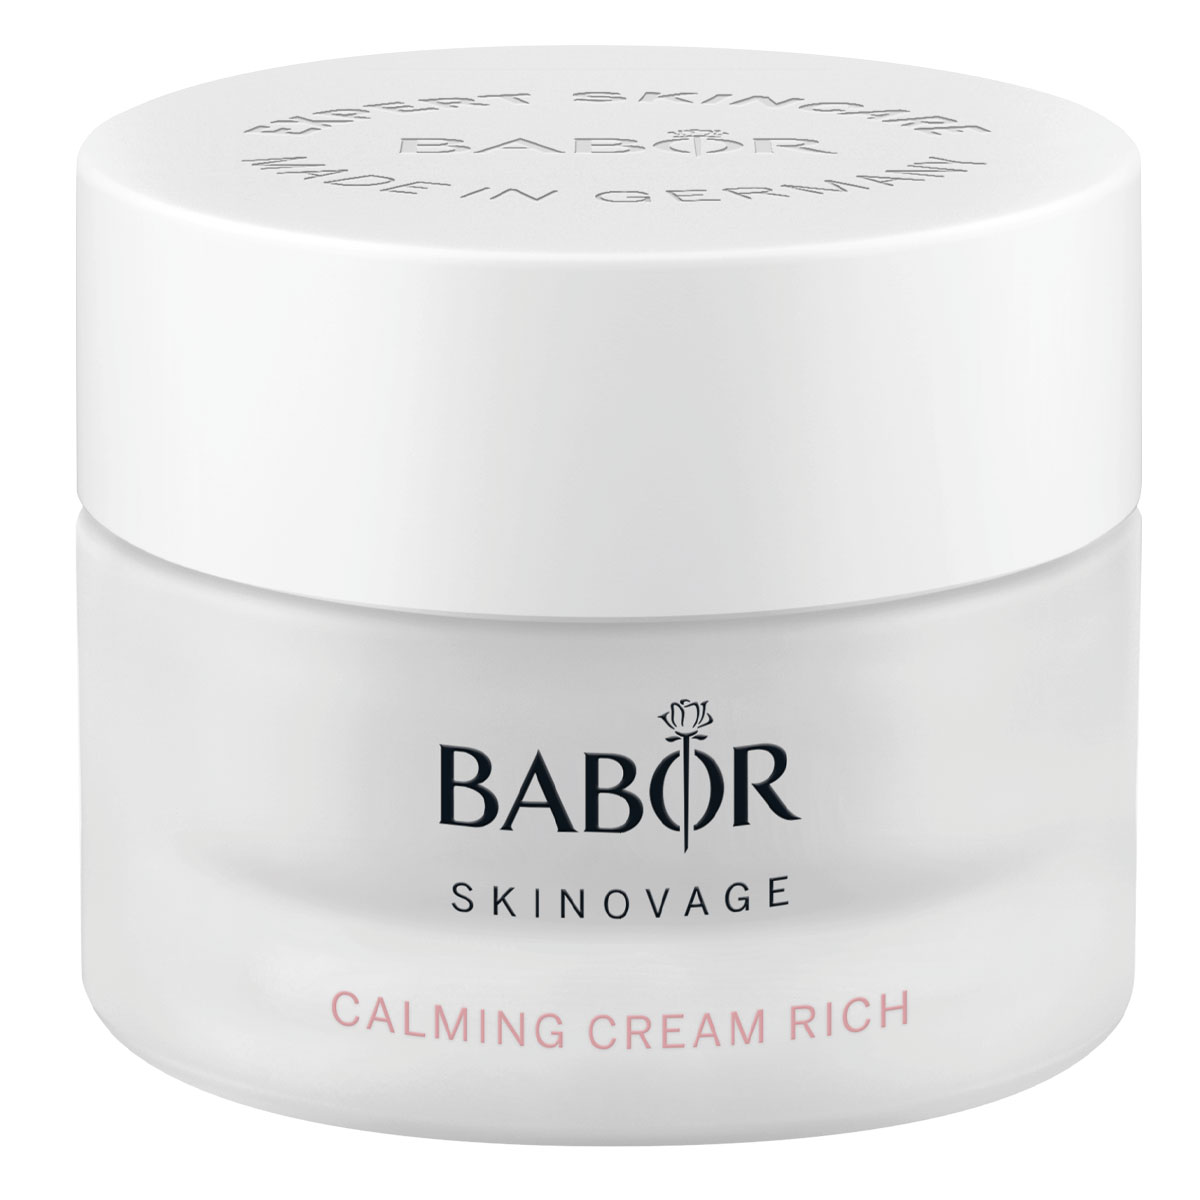 BABOR Skinovage Calming Cream Rich 50ml - интернет-магазин профессиональной косметики Spadream, изображение 41723